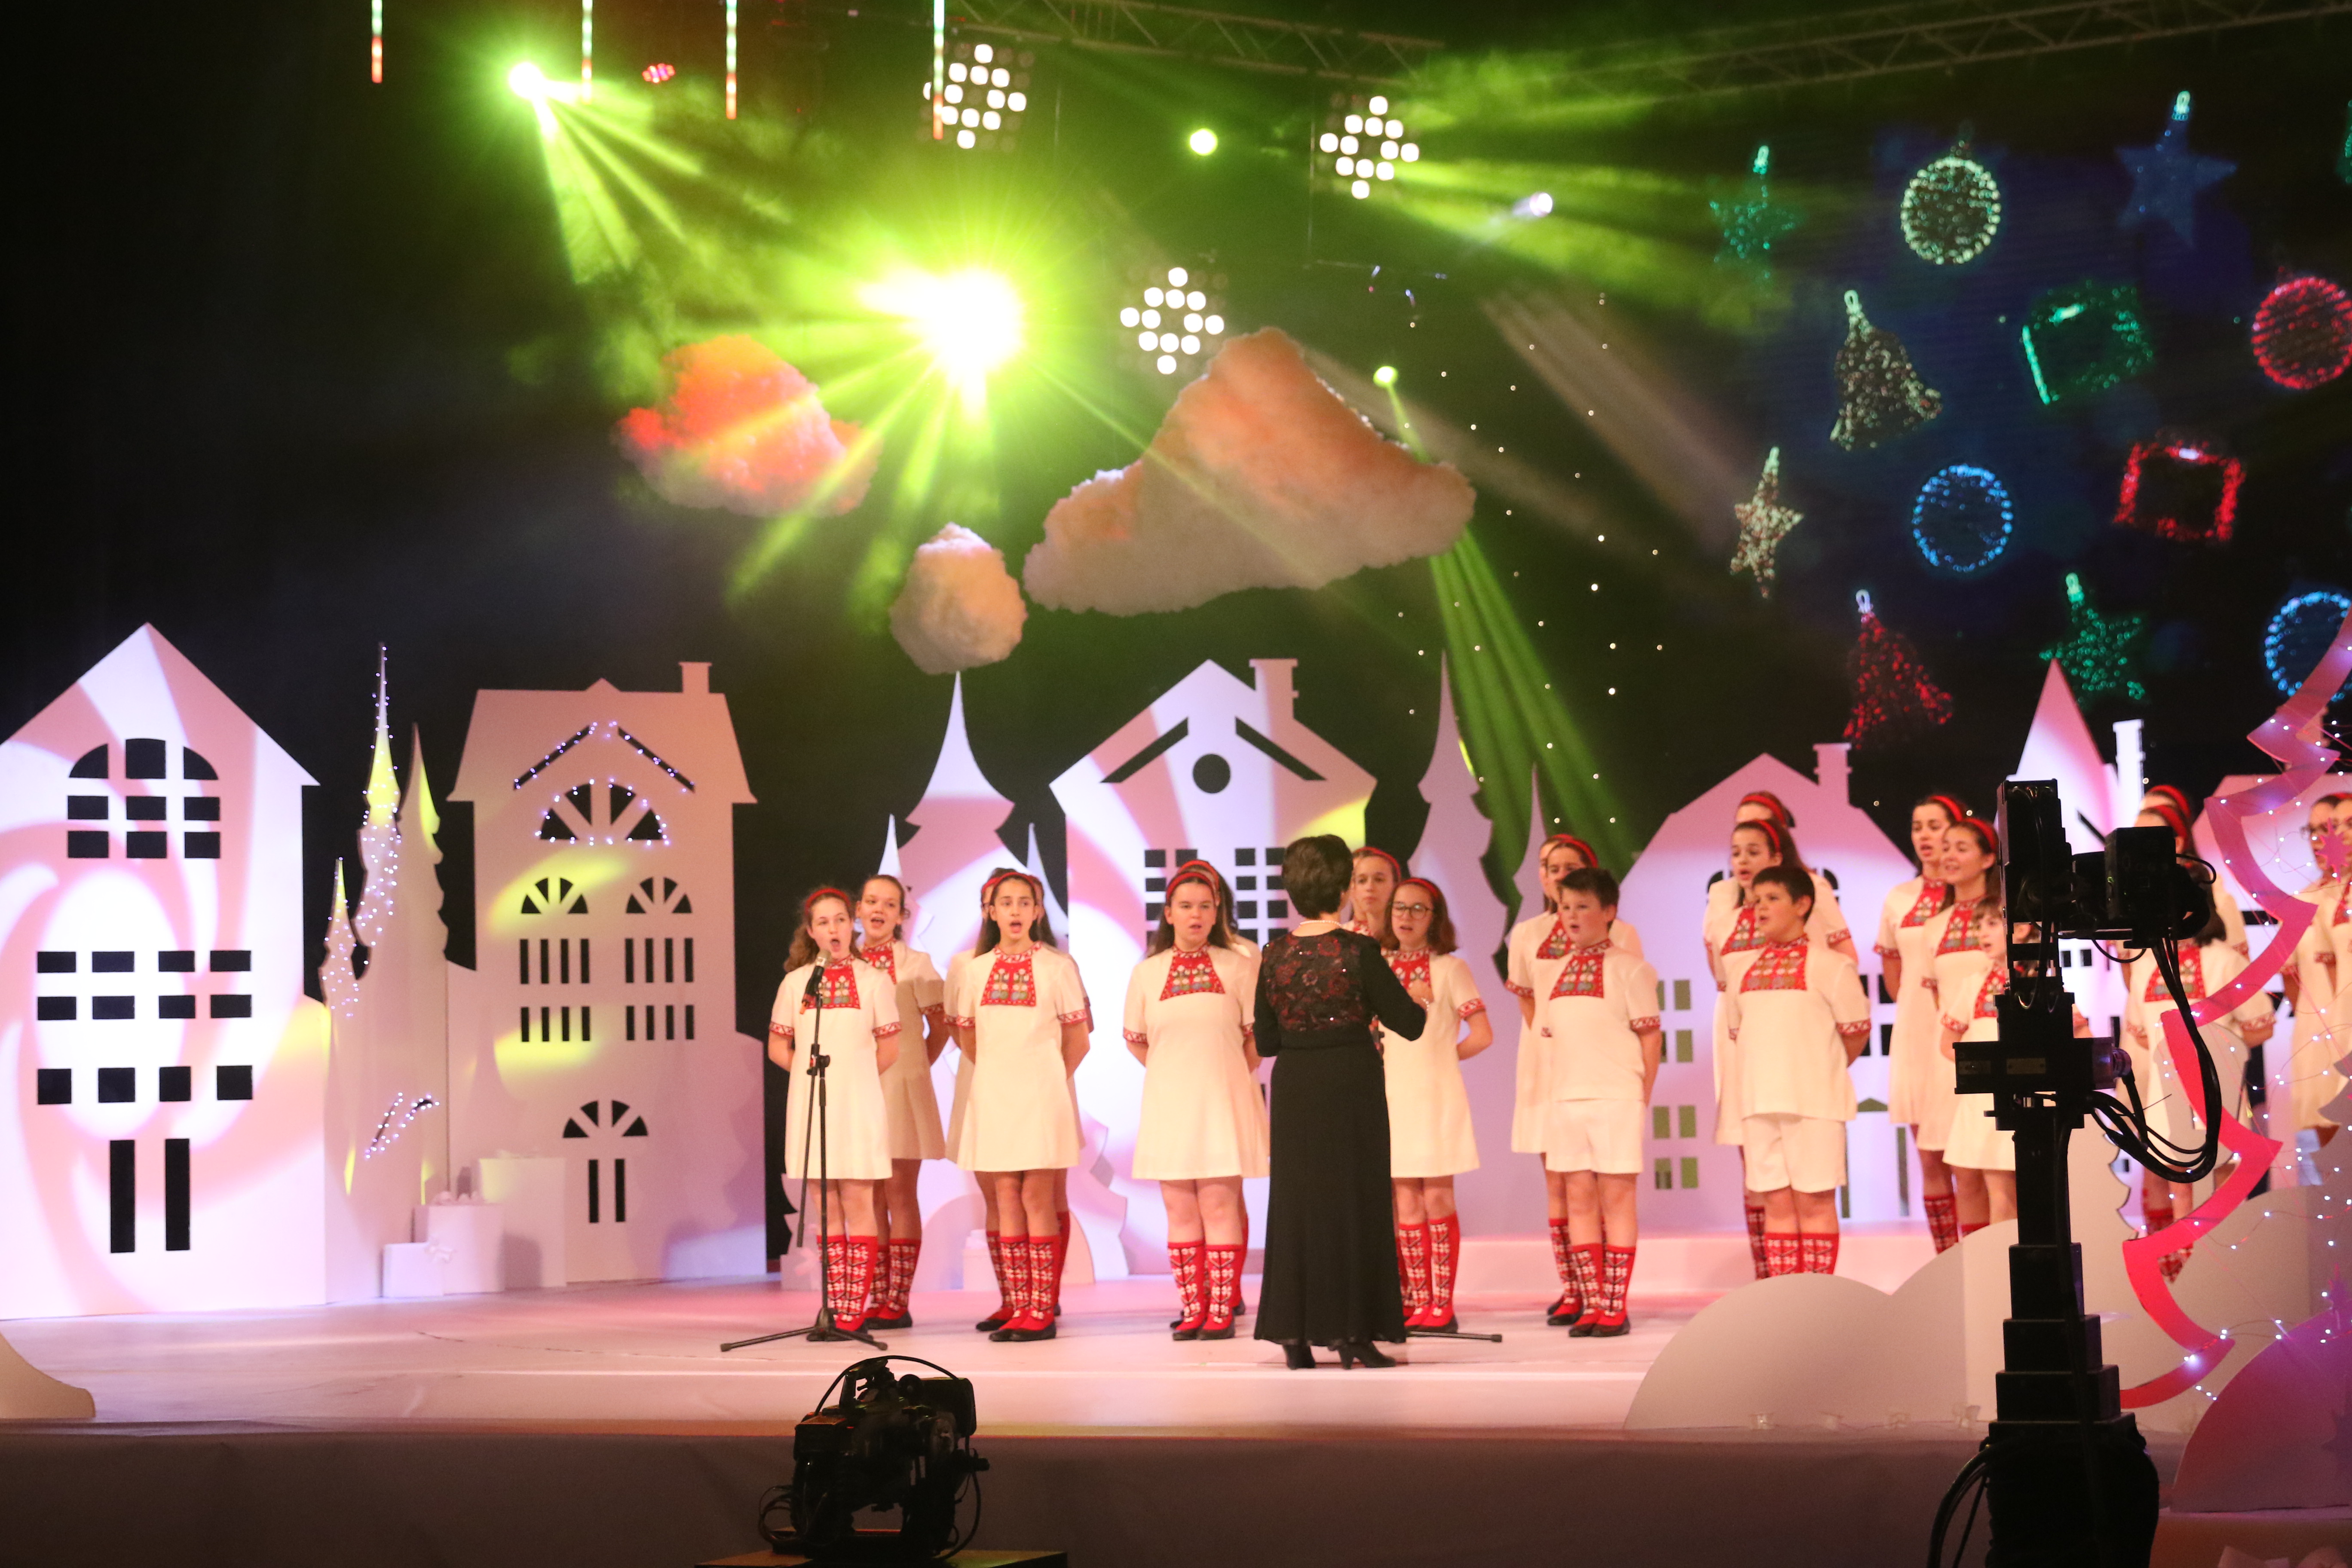 За 17-та поредна година се провежда благотворителният концерт "Българската Коледа" под патронажа на президента Румен Радев.